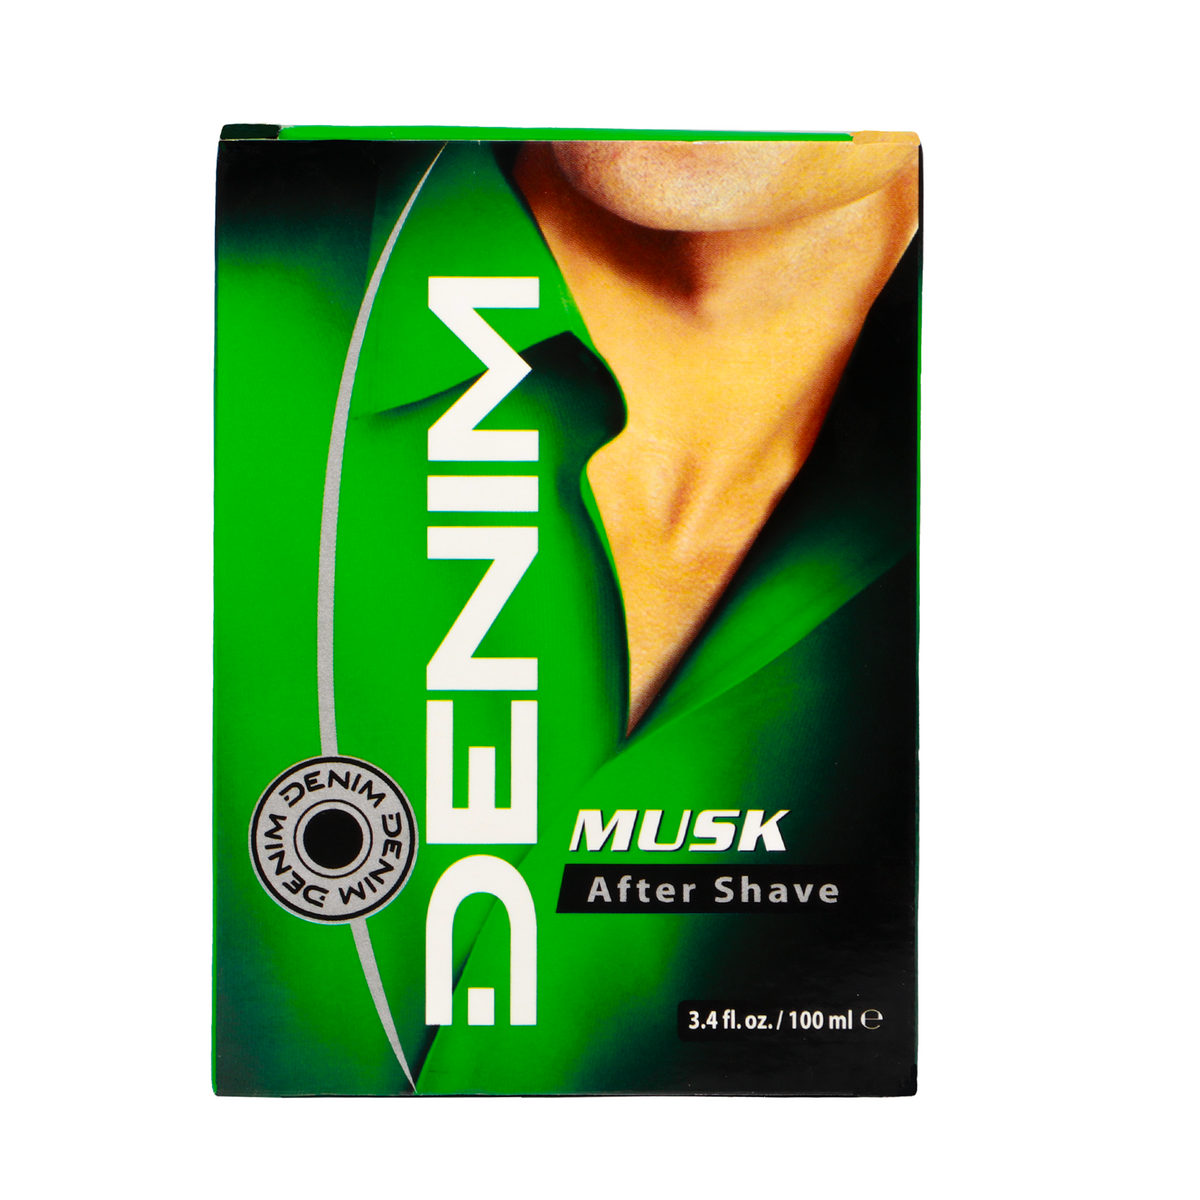 Denim After Shave Musk 100Ml